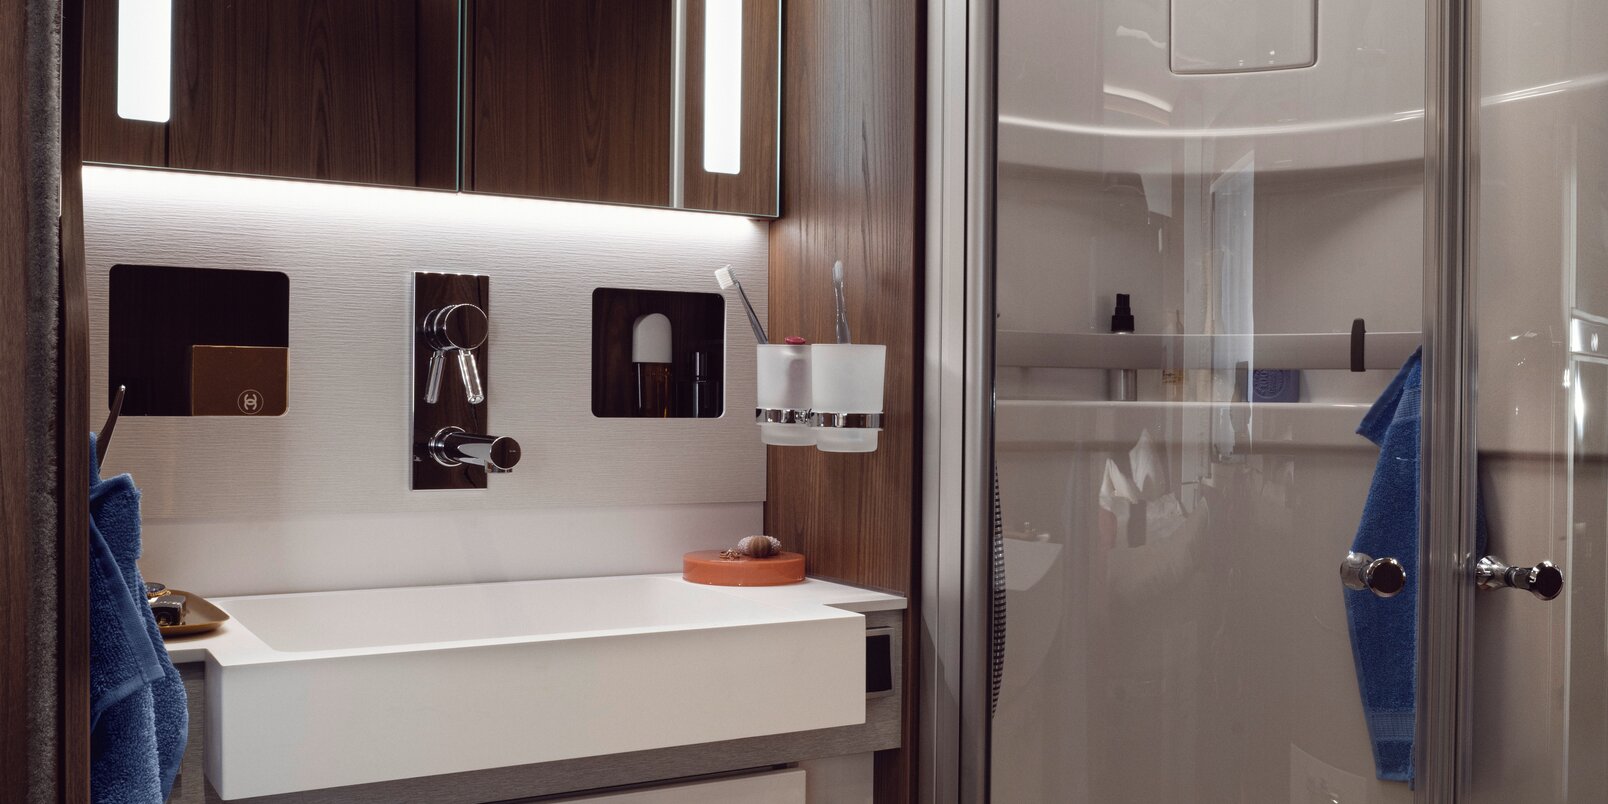 Baño en el HYMER B-ML I 890: mueble con espejo iluminado, cajones debajo del lavabo, ducha separada con puertas de vidrio real